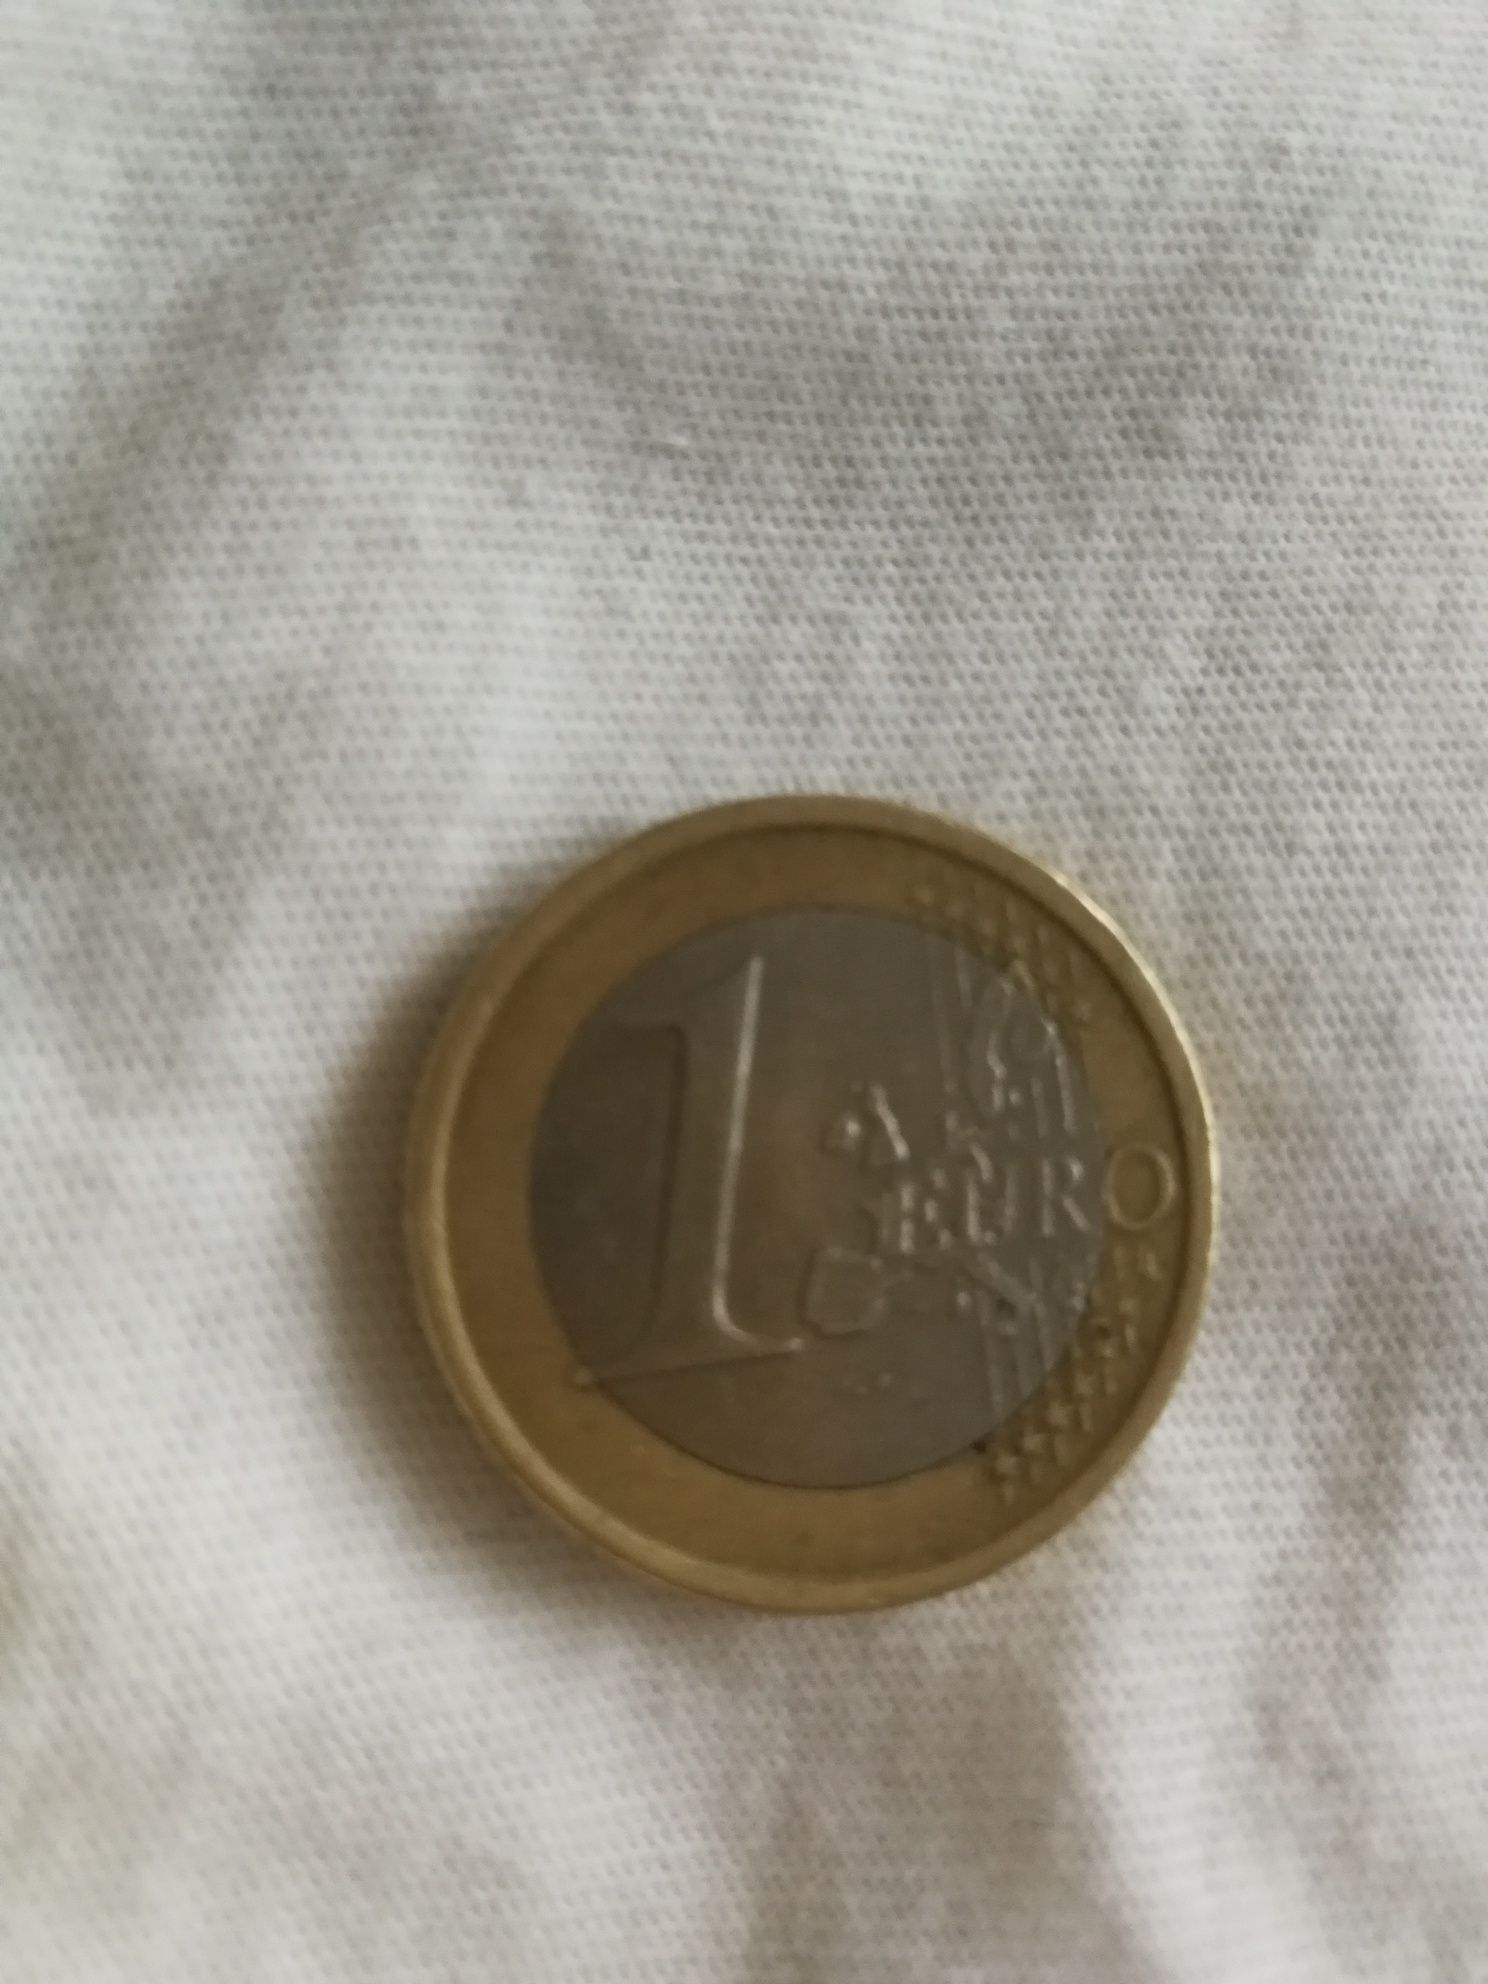 10 eurocenți belgium, 1euro espana